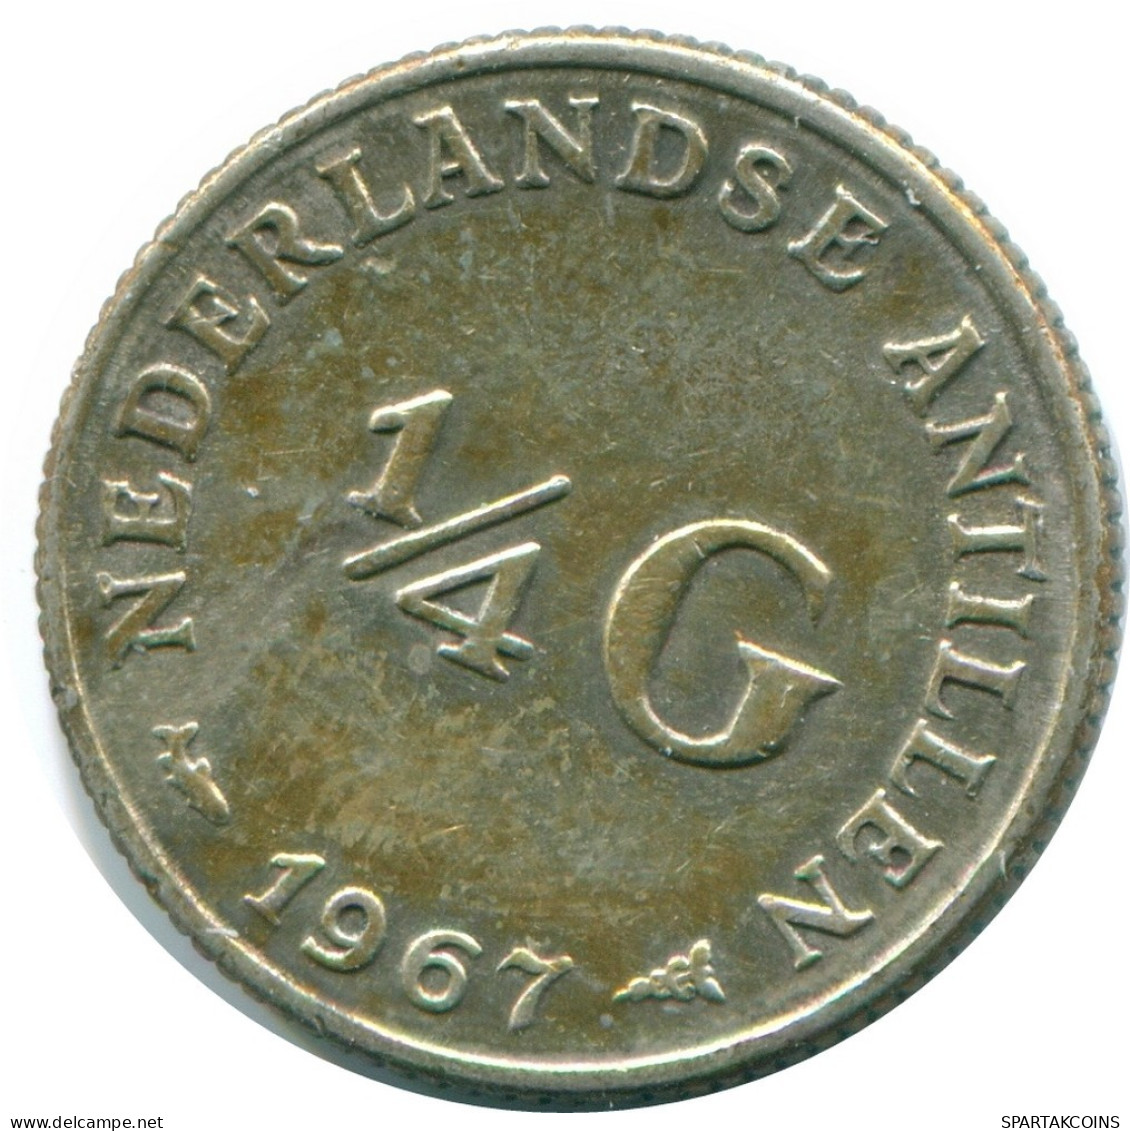 1/4 GULDEN 1967 NIEDERLÄNDISCHE ANTILLEN SILBER Koloniale Münze #NL11594.4.D.A - Antille Olandesi